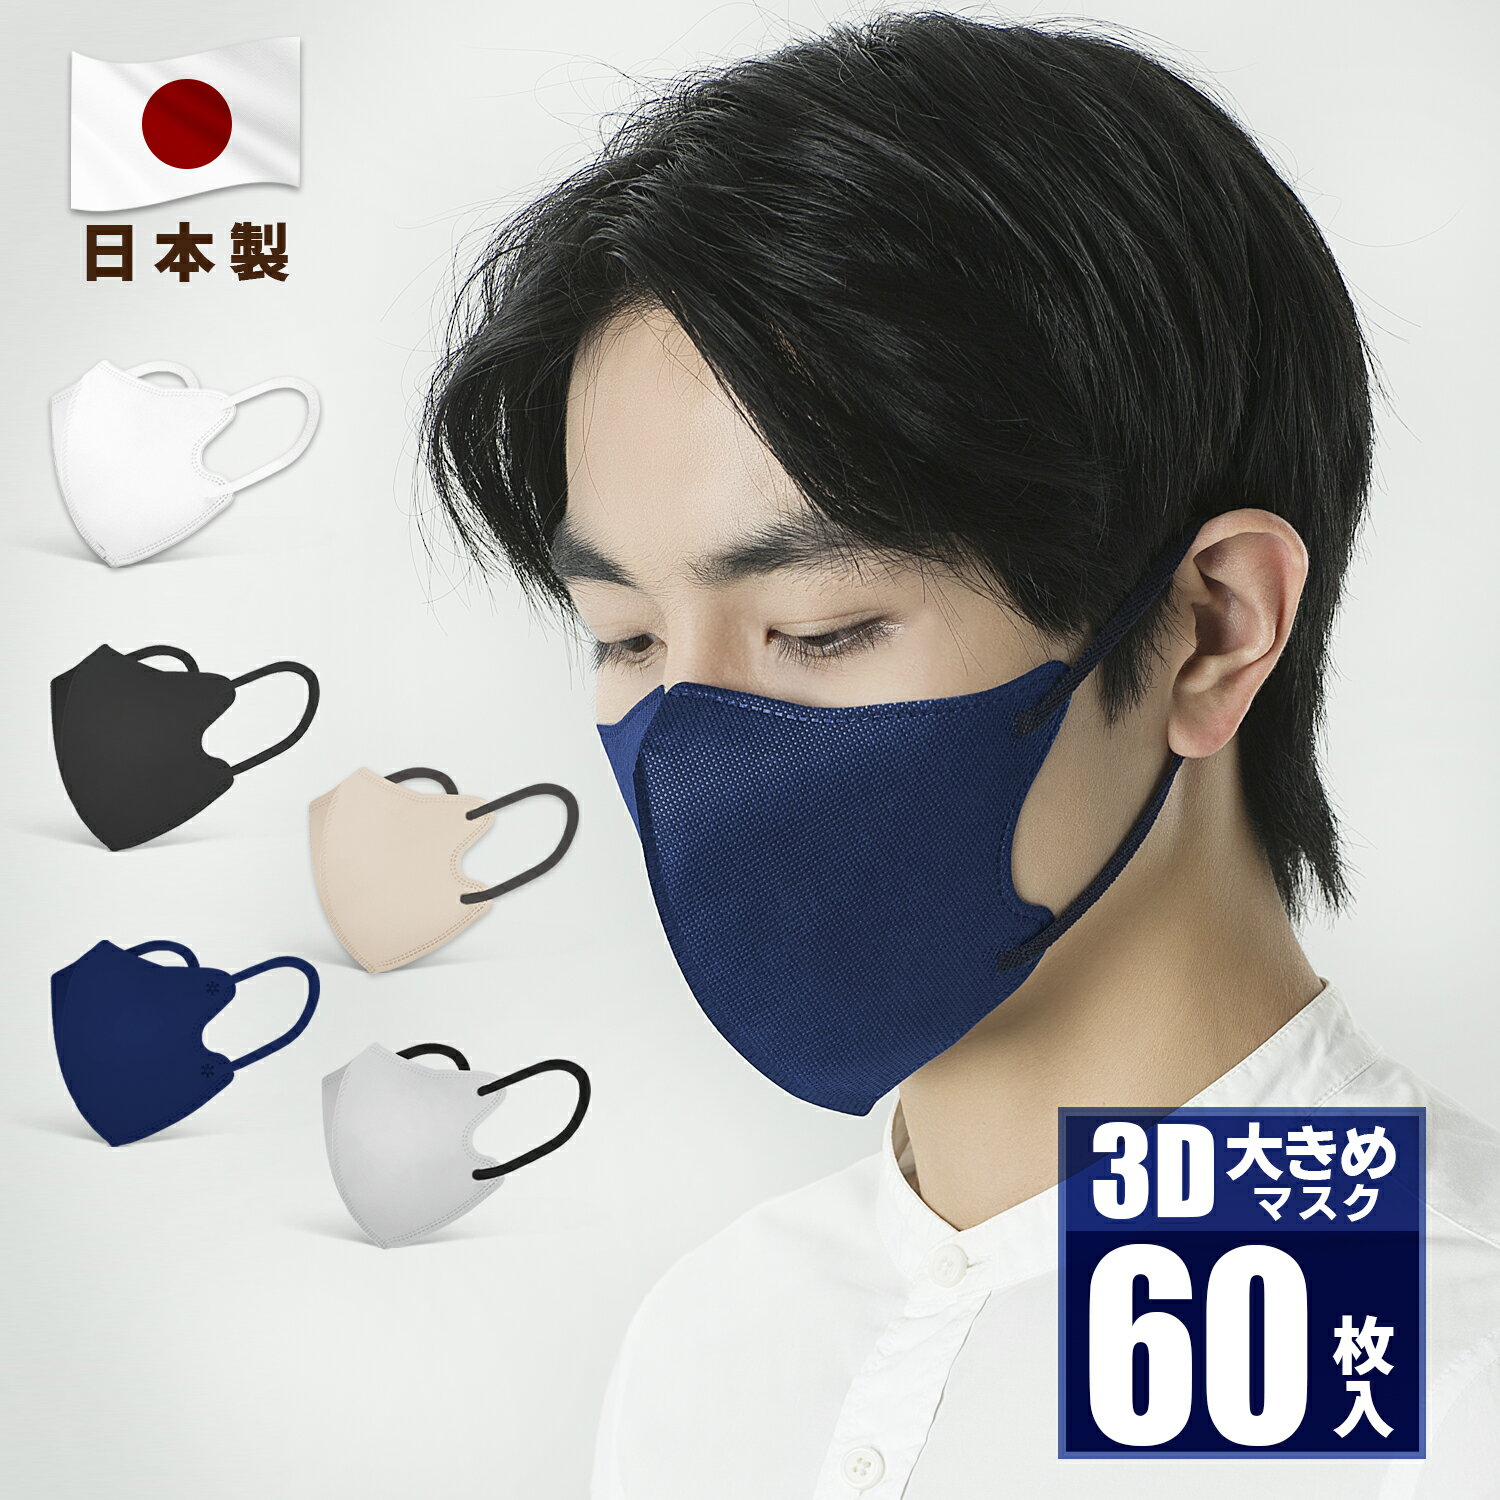 日本製 大きめマスク 大きめ3Dマスク バイカラーマスク バ